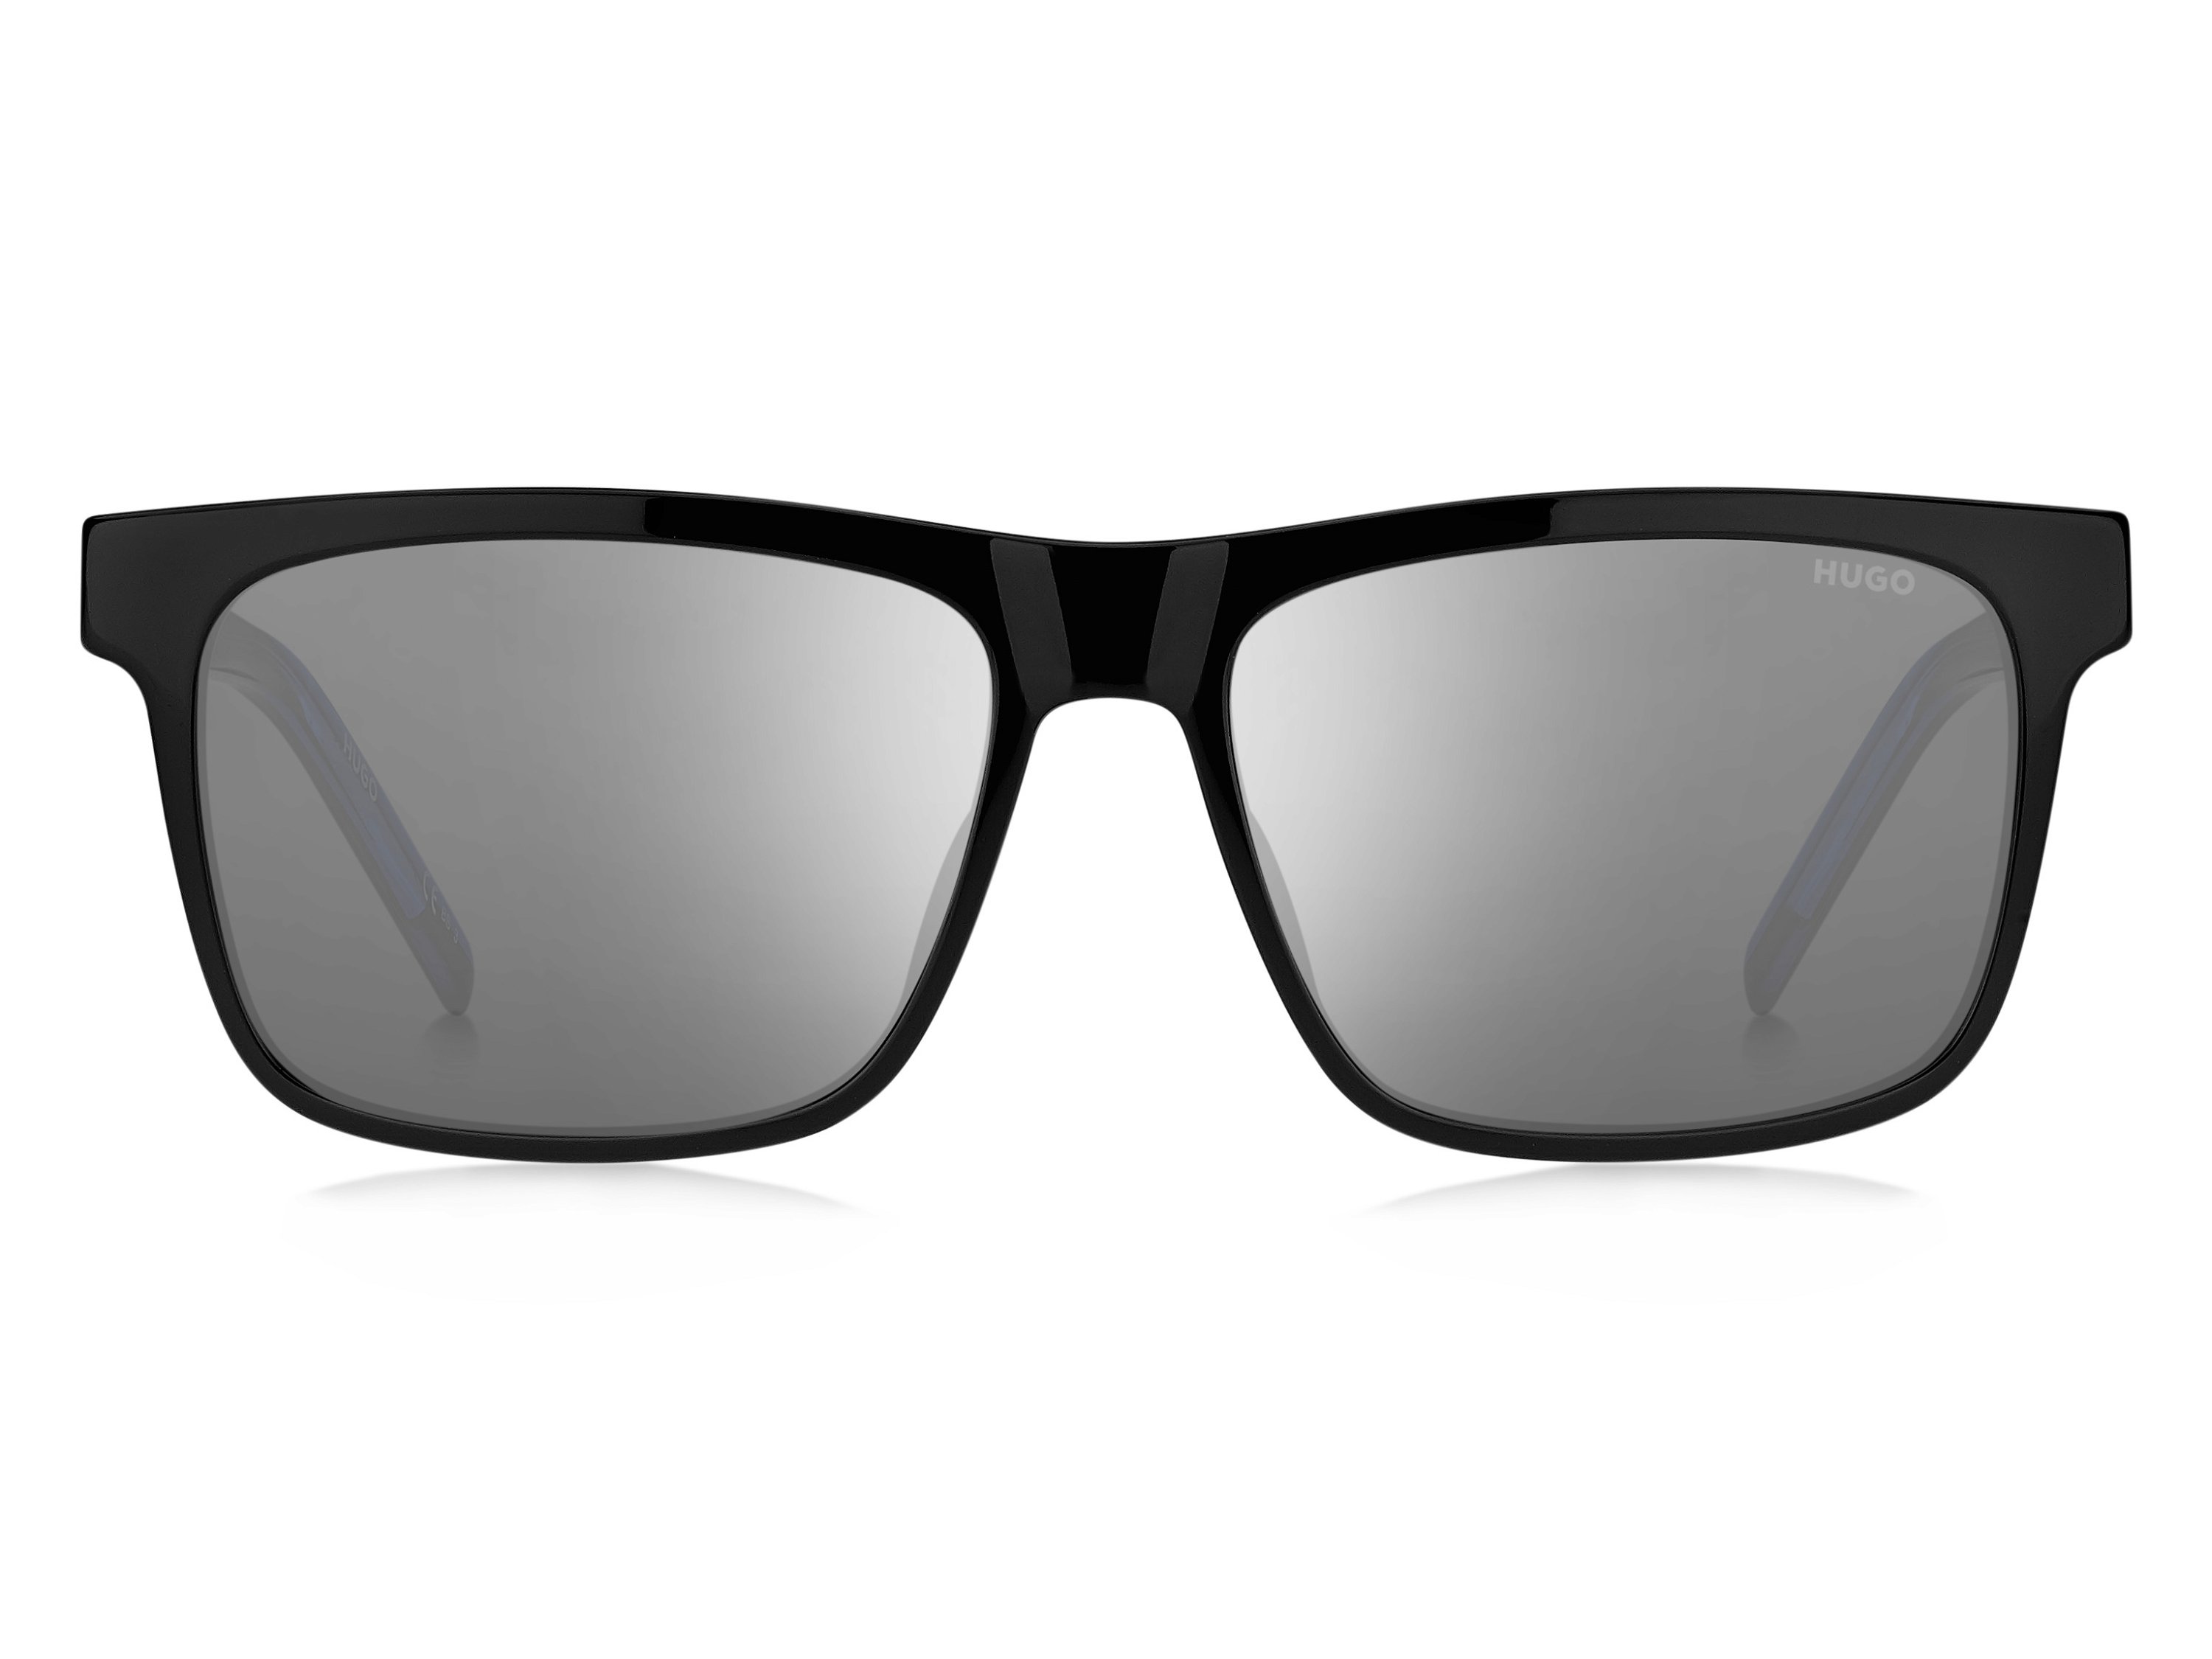 Das Bild zeigt die Sonnenbrille HG1242/S D51 von der Marke Hugo in schwarz/blau.